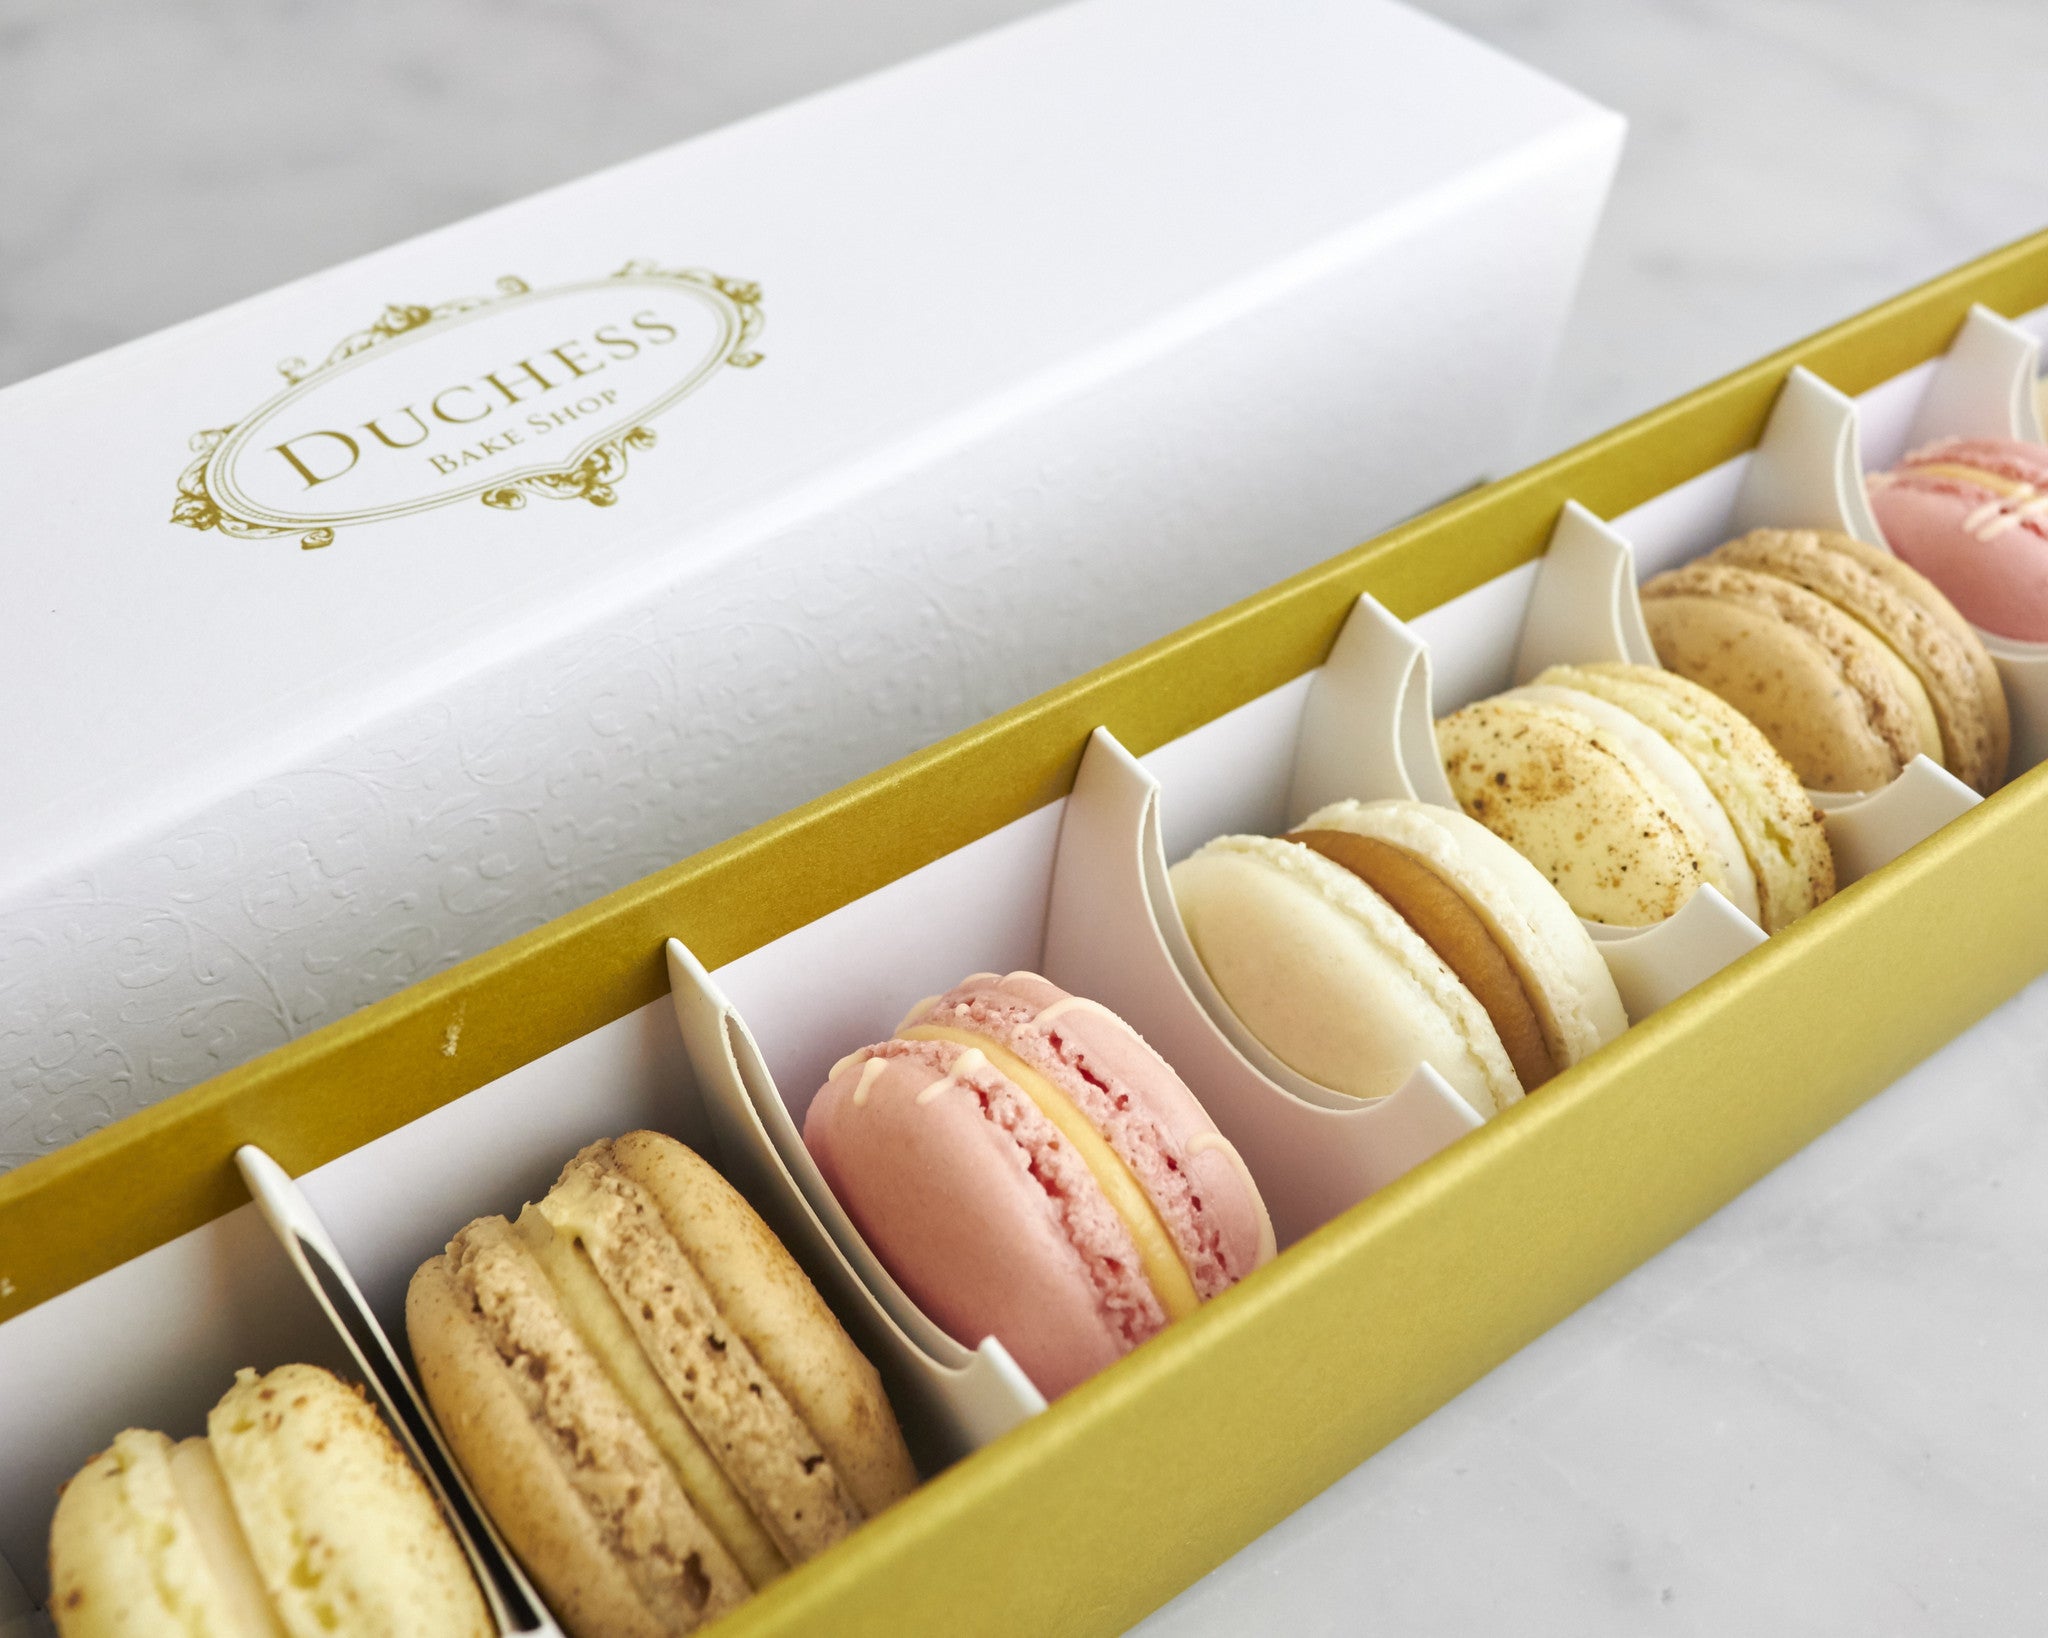 macaron-gift-box-duchess-bake-shop